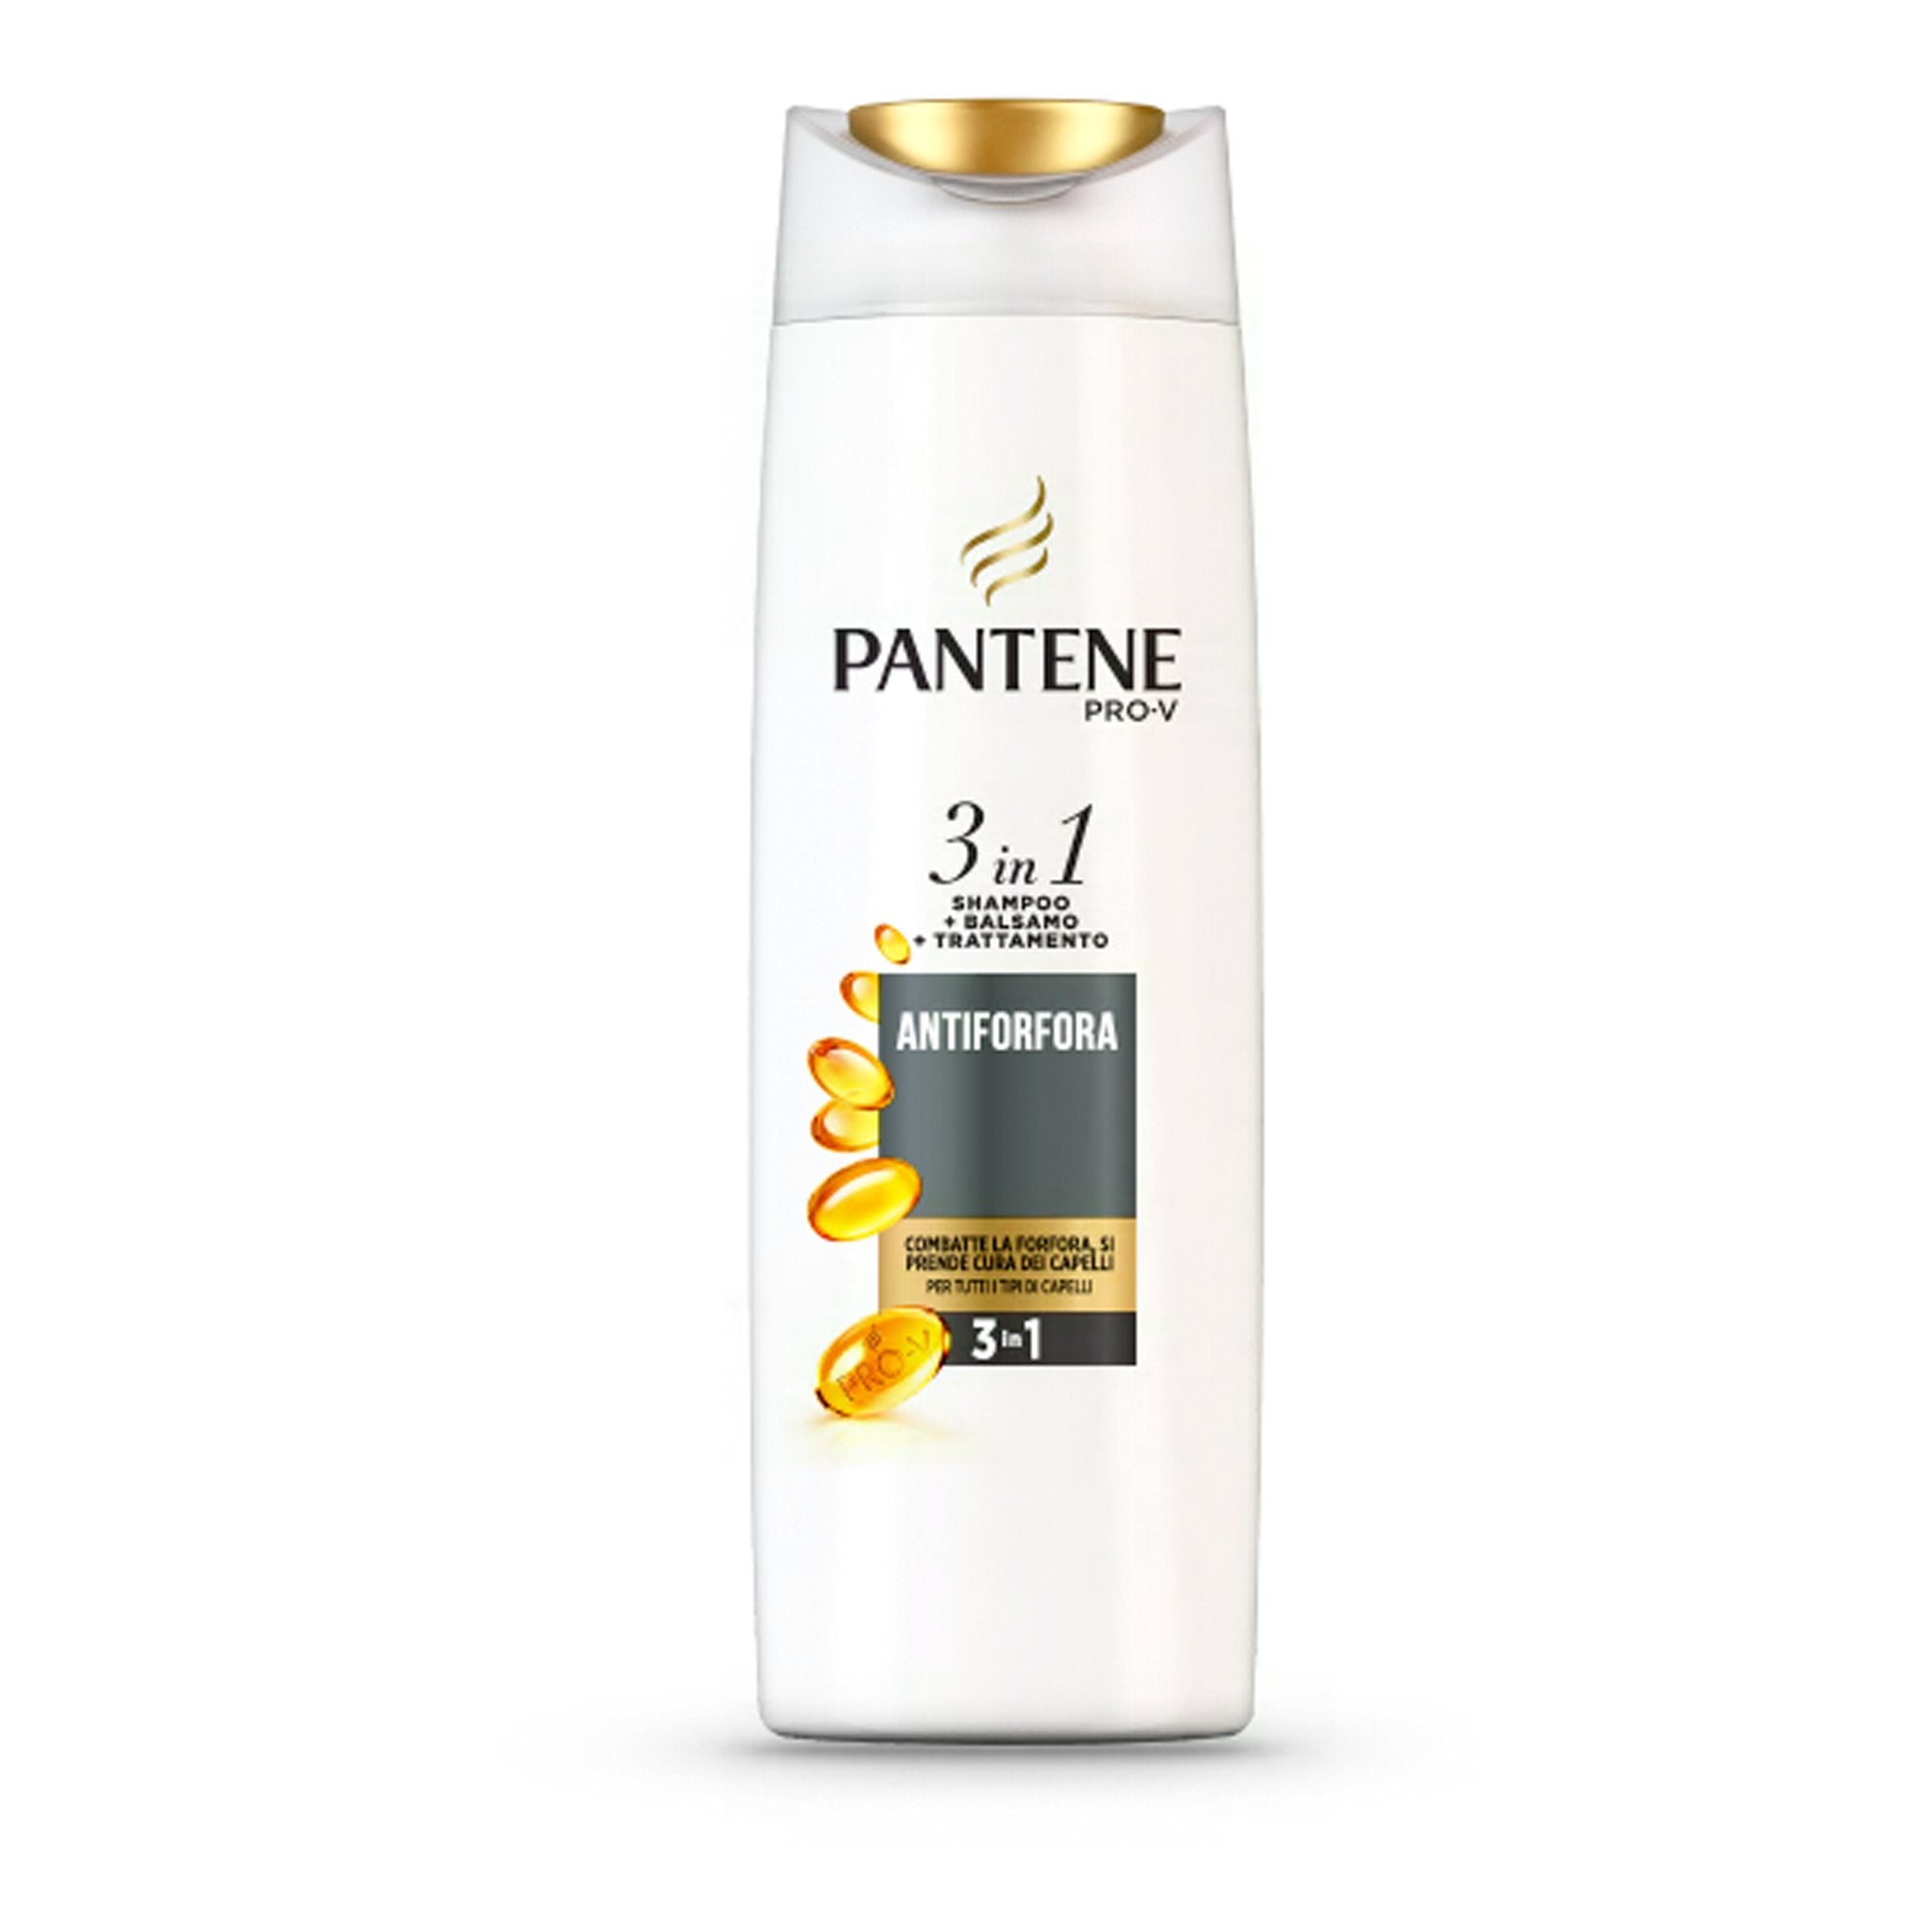 pantene-shampoo-3in1-linea-antiforfora-225ml